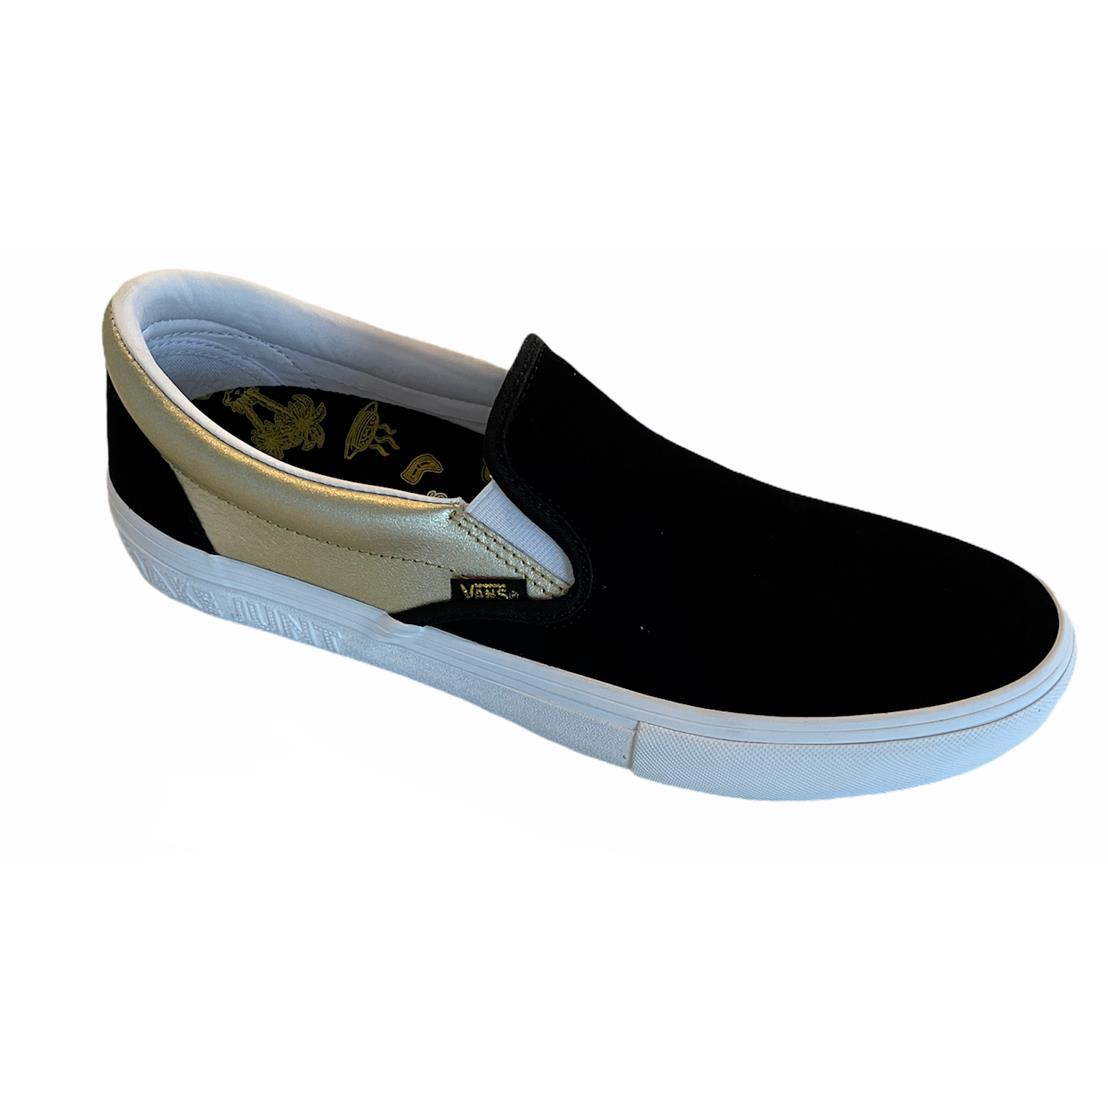 Vans Shake Junt Slip On Pro Black Gold Men`s Skate Shoes Size 10 Fast